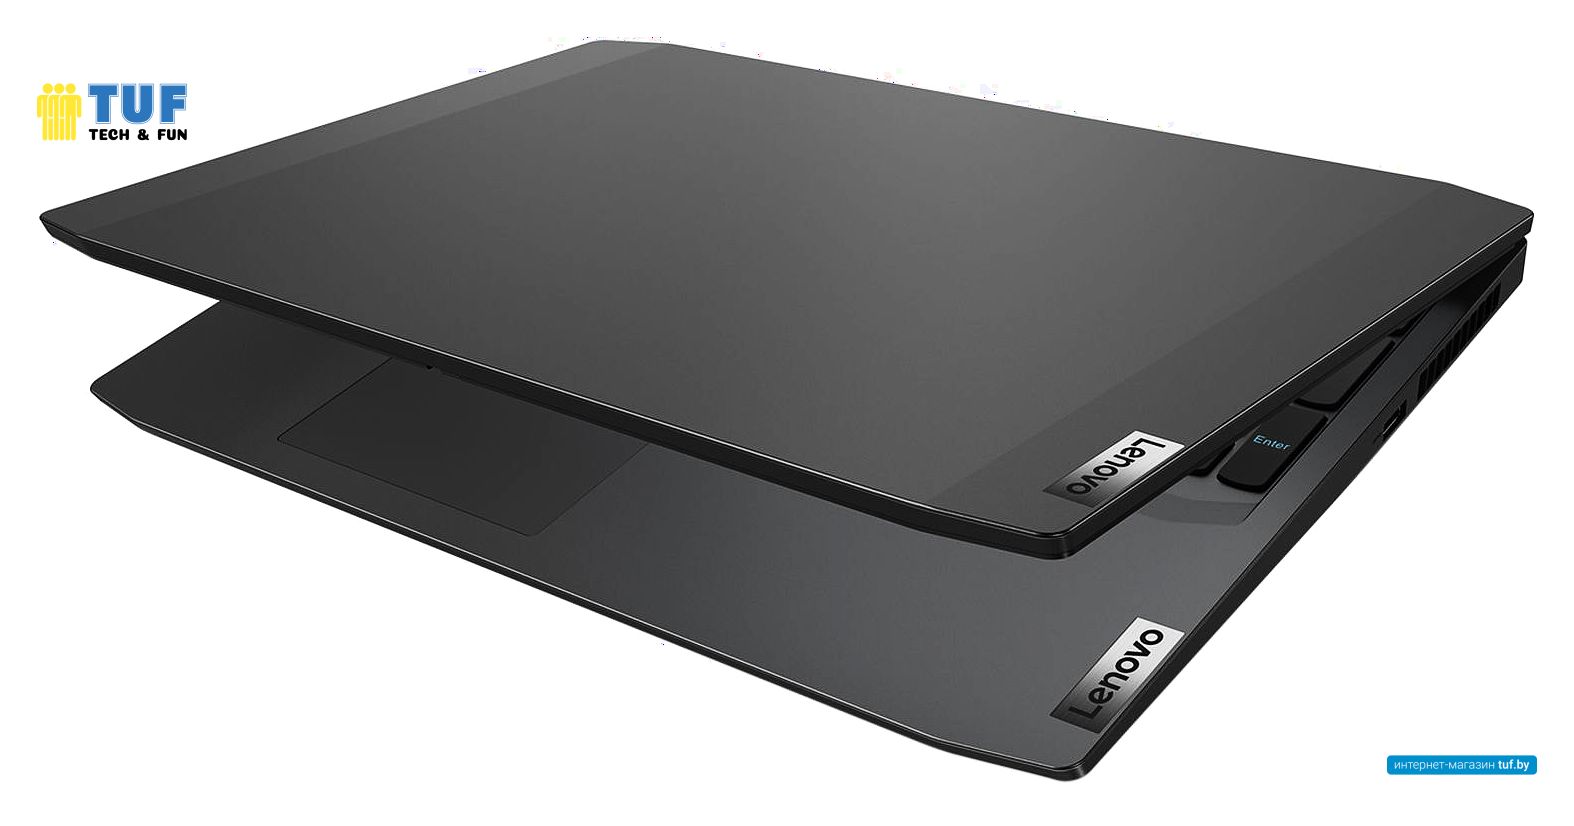 Игровой ноутбук Lenovo IdeaPad Gaming 3 15ARH05 82EY000DRU